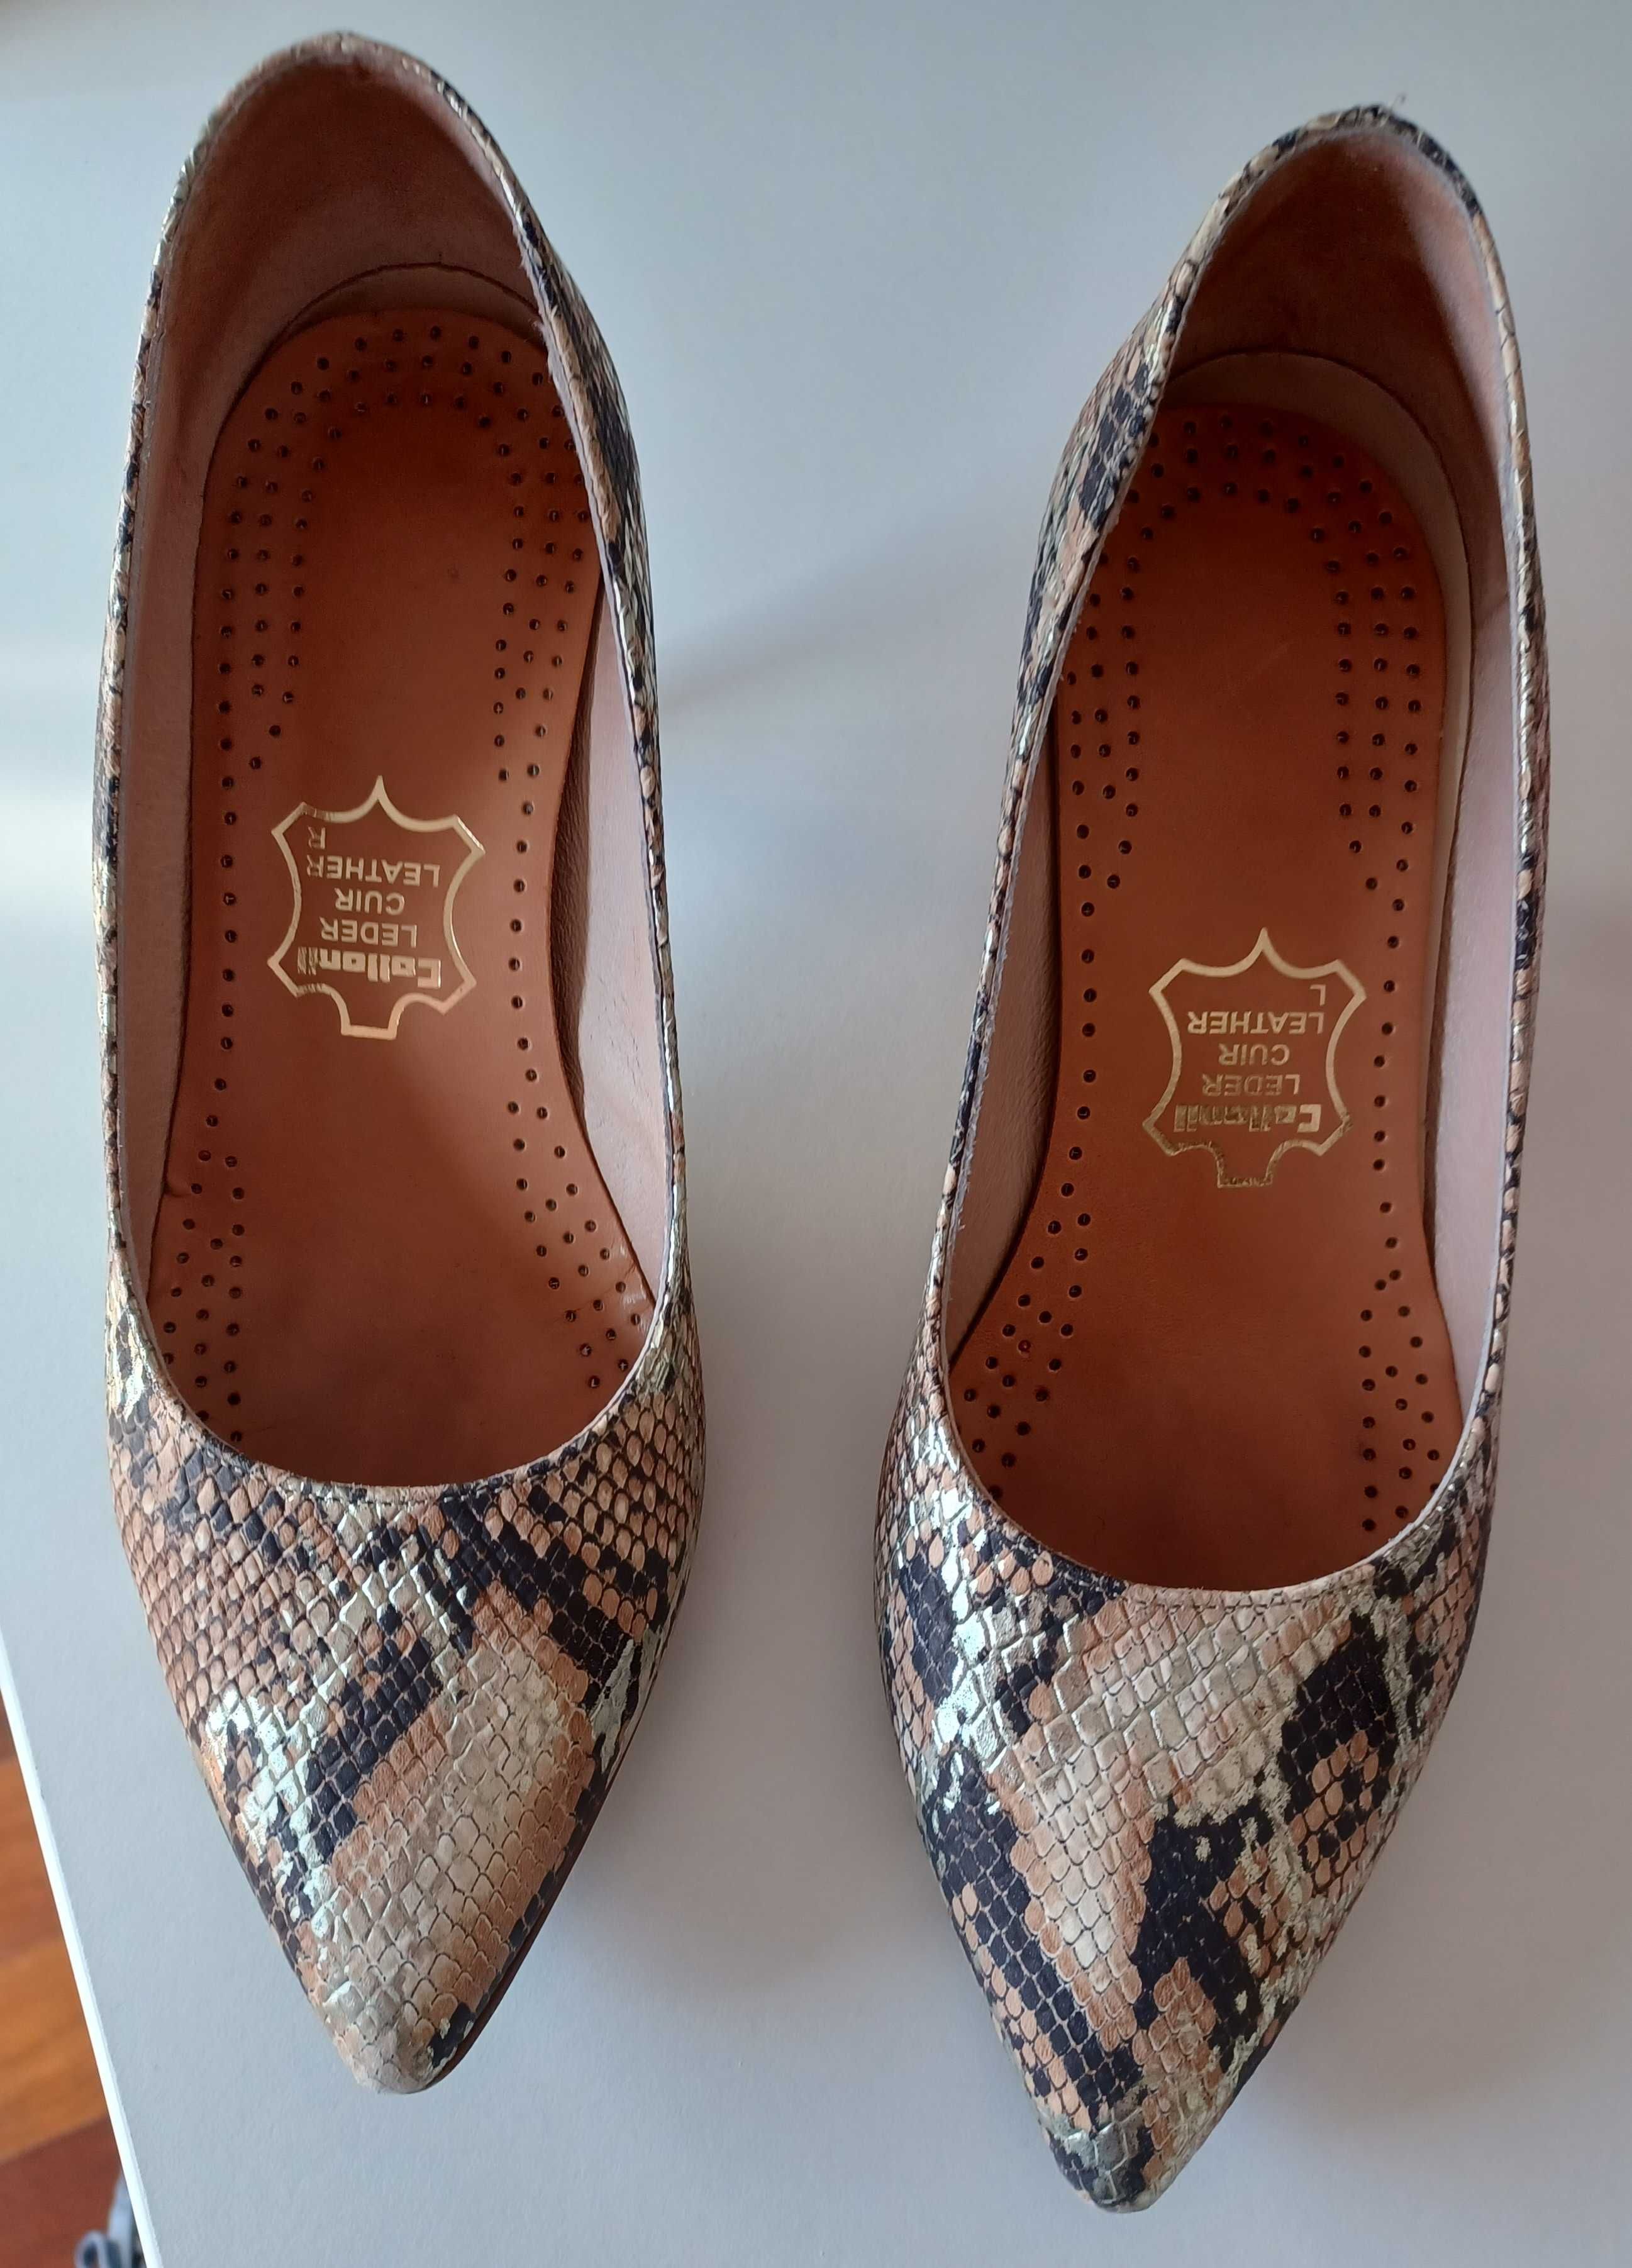 Sapatos Mulher - padrão "tigreza" - Sofia Costa - Tamanho 35